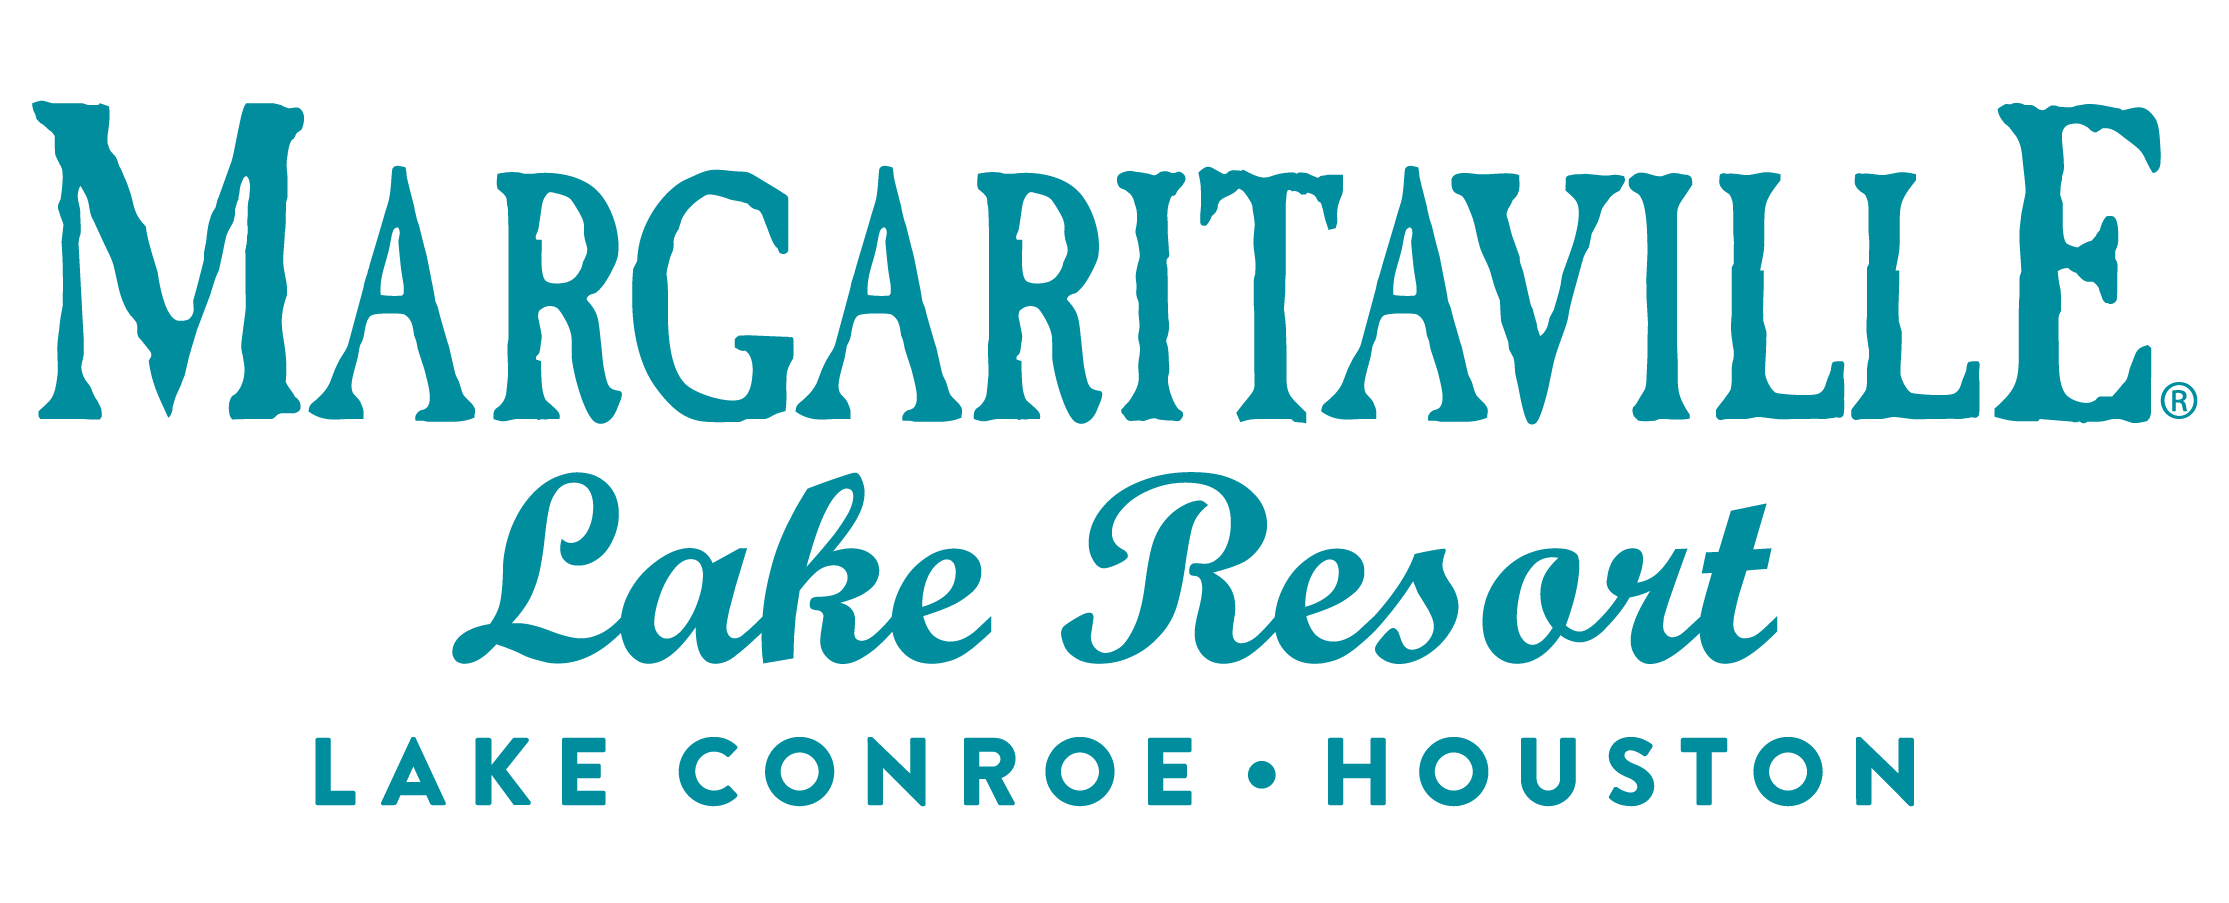 Margaritaville Lake Resort Lake Conroe